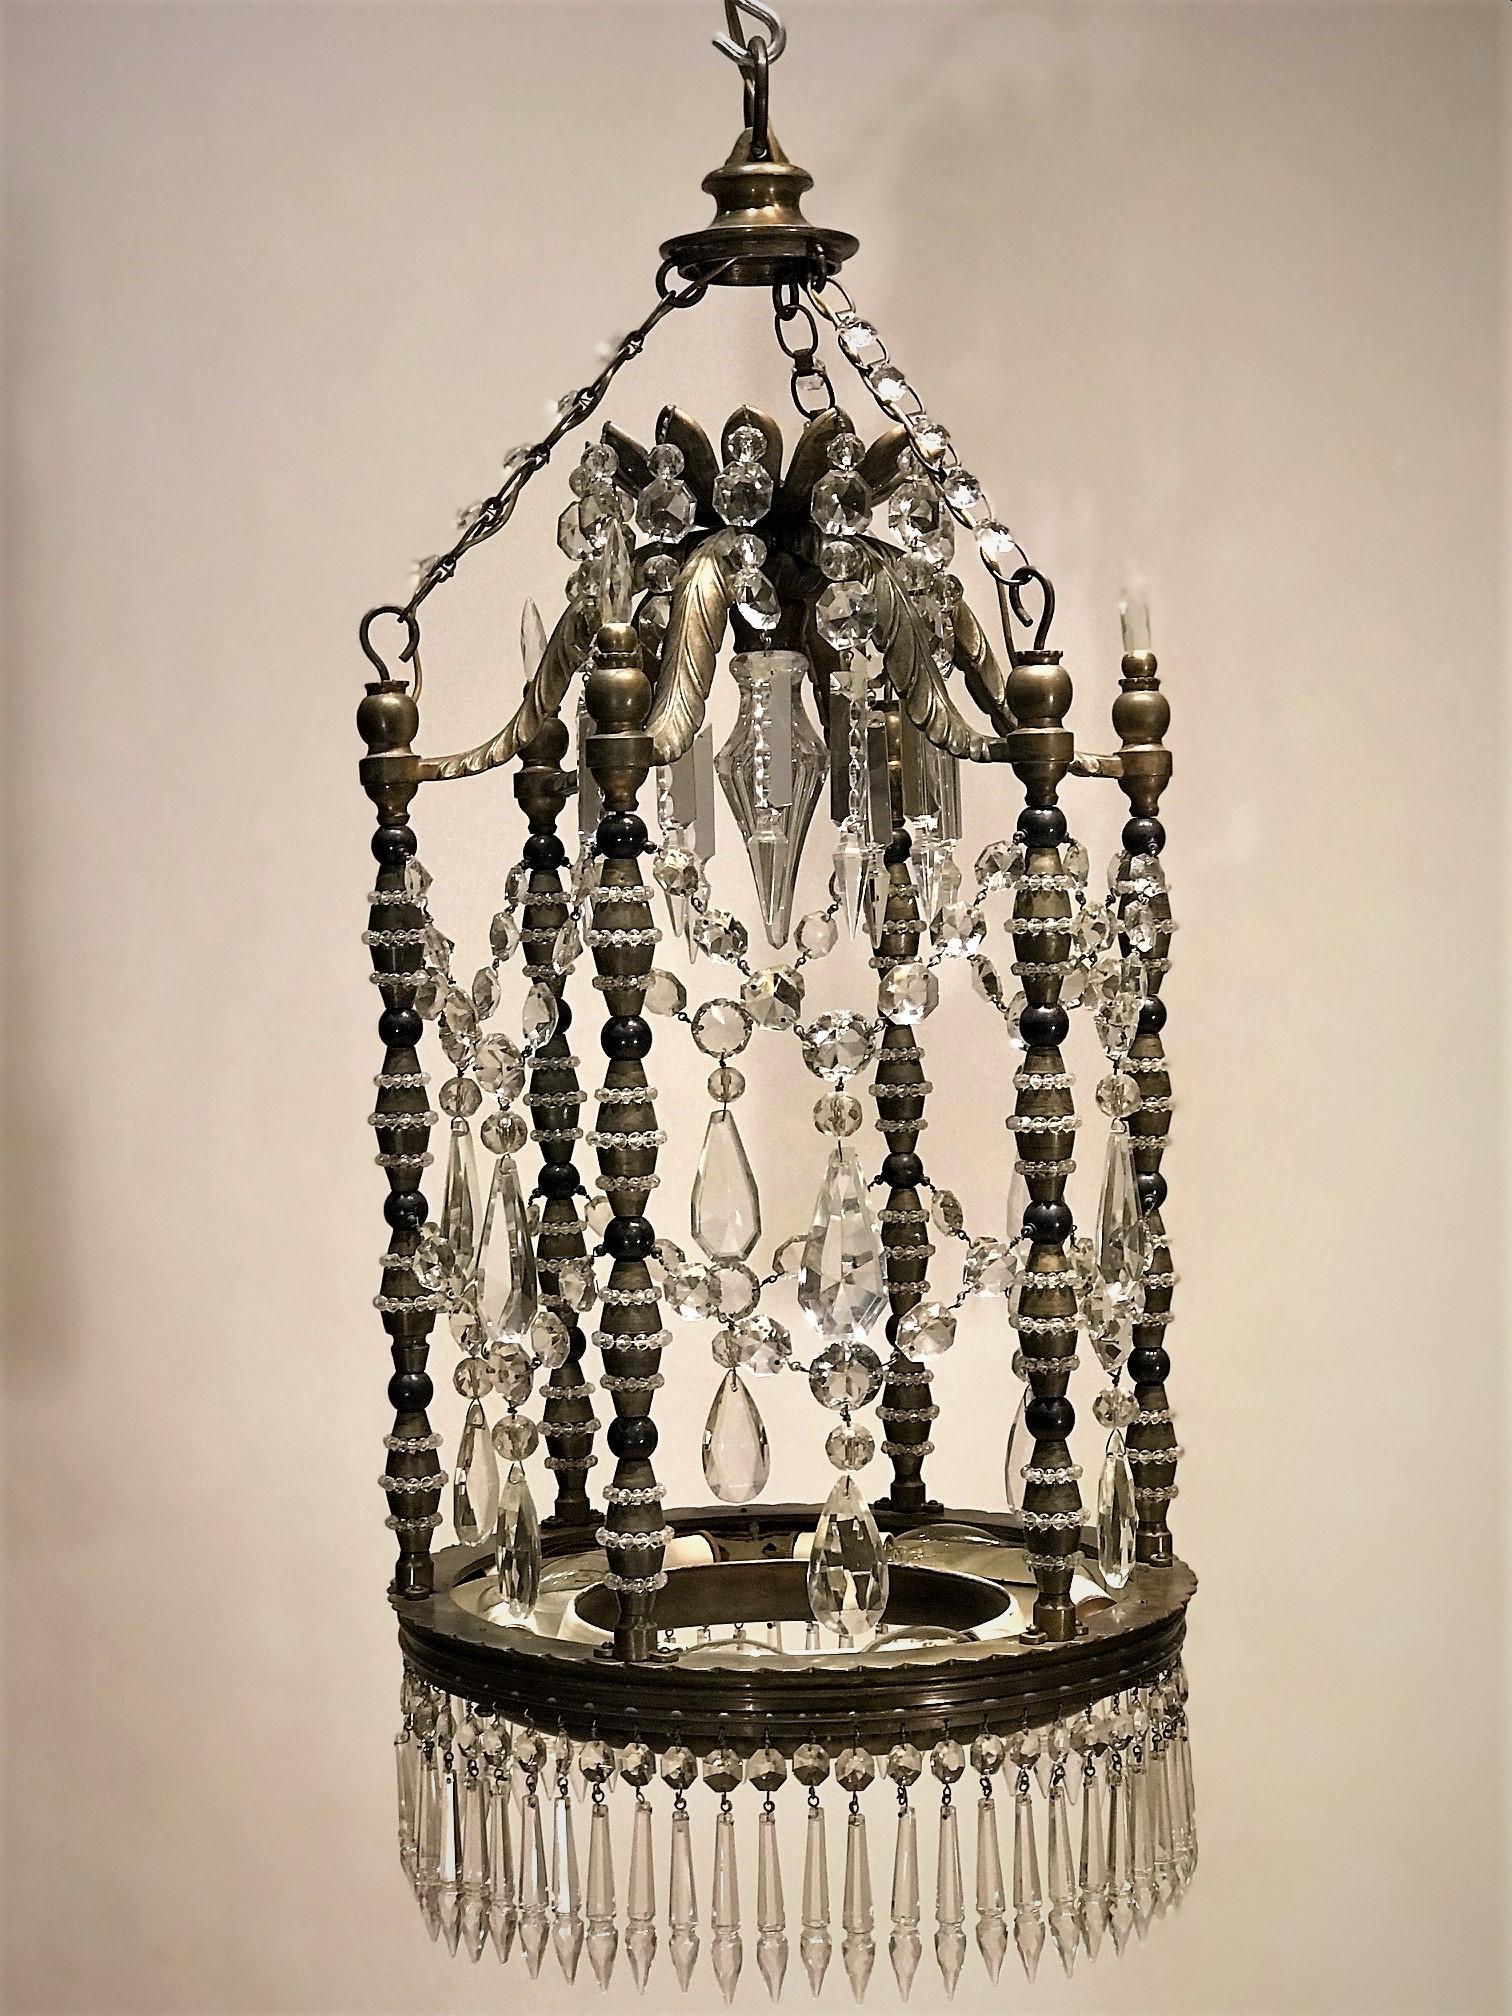 Cette lanterne unique a probablement été fabriquée à la main en Turquie avant la Première Guerre mondiale. Elle est fabriquée en laiton coulé à la main et en cristal de plomb taillé à la main. La base comporte 6 lumières indirectes pouvant